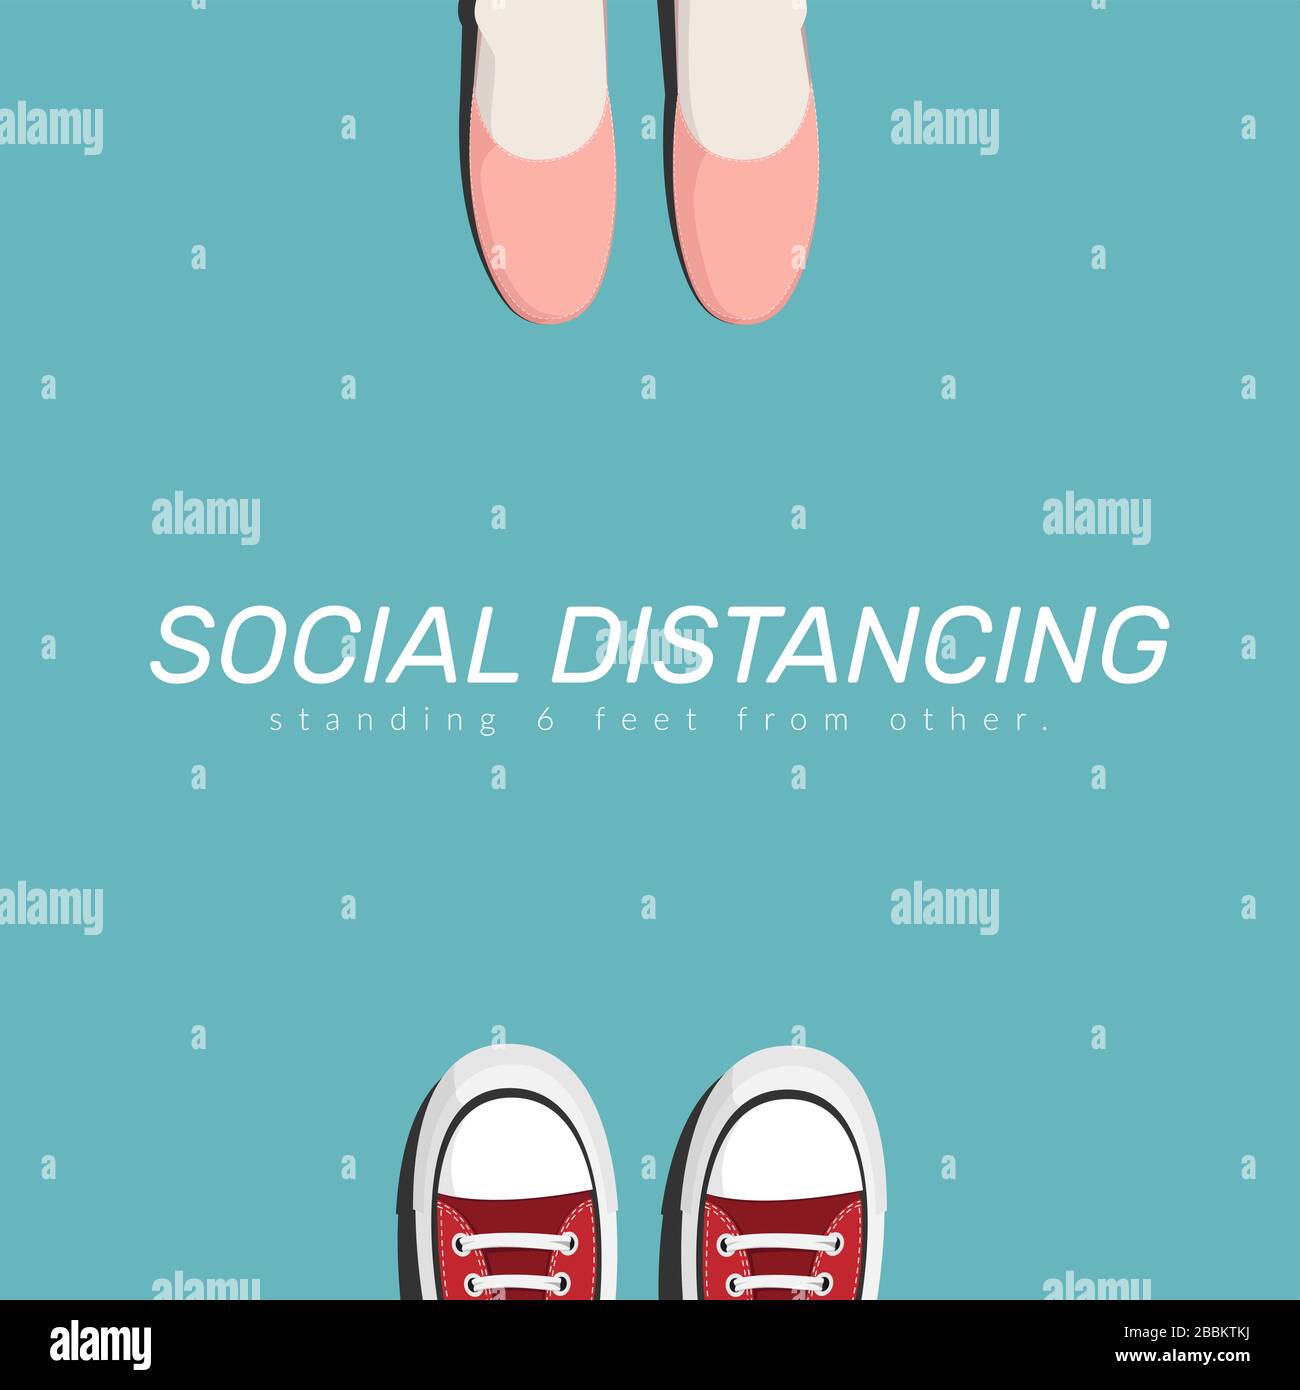 Soziale Distanz: Zwei Menschen halten sich für soziale Distanzierungen zwischen einander auf und vergrößern so den physischen Raum zwischen den Menschen, um sich nicht zu verbreiten Stock Vektor